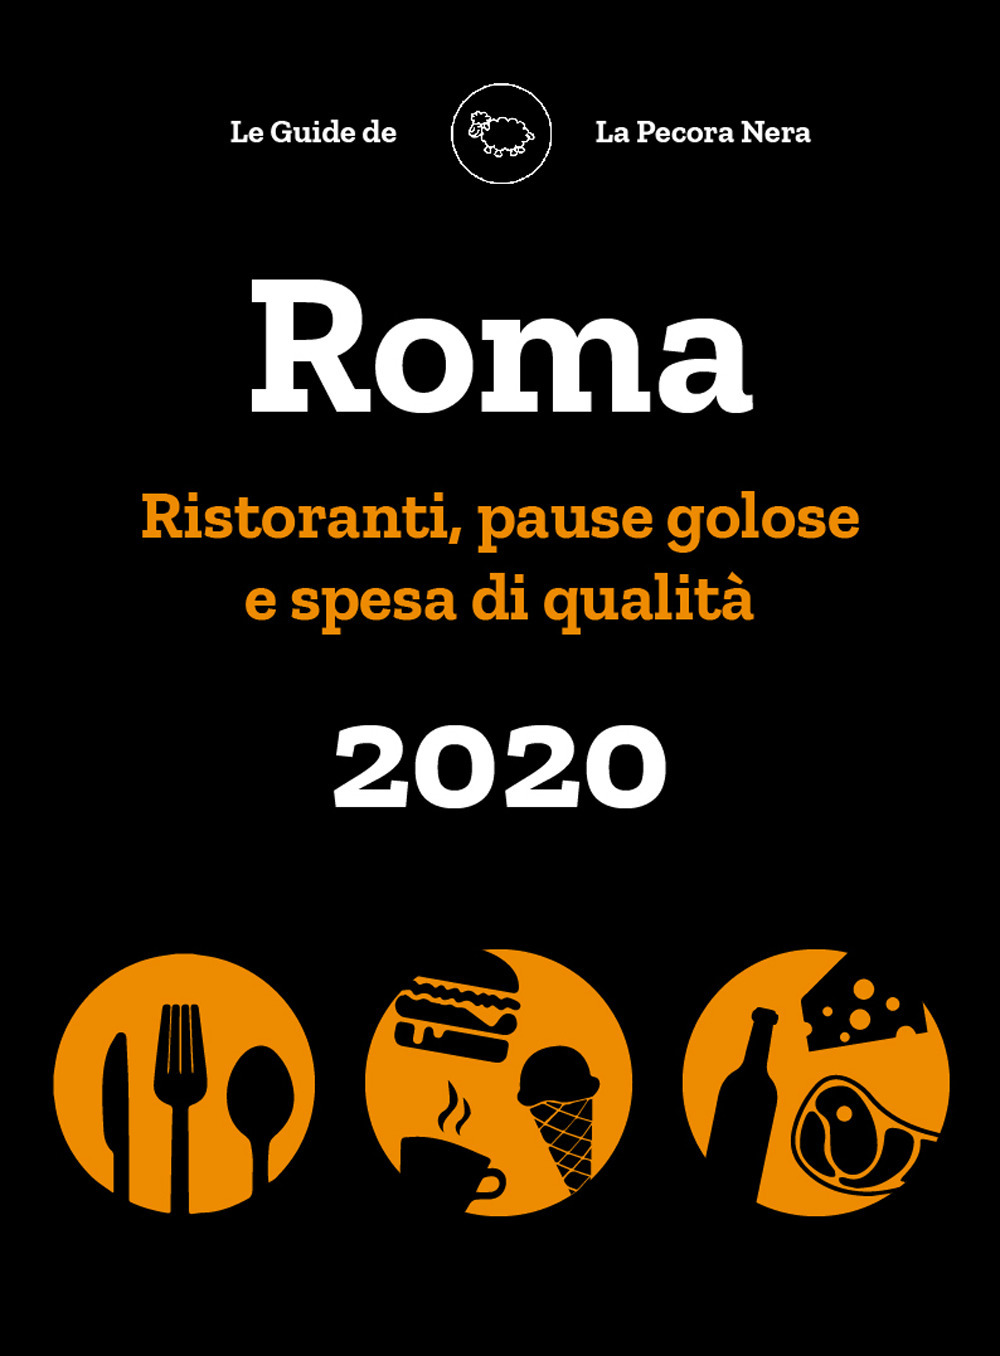 Roma de La Pecora Nera 2020. Ristoranti, pause golose e spesa di qualità